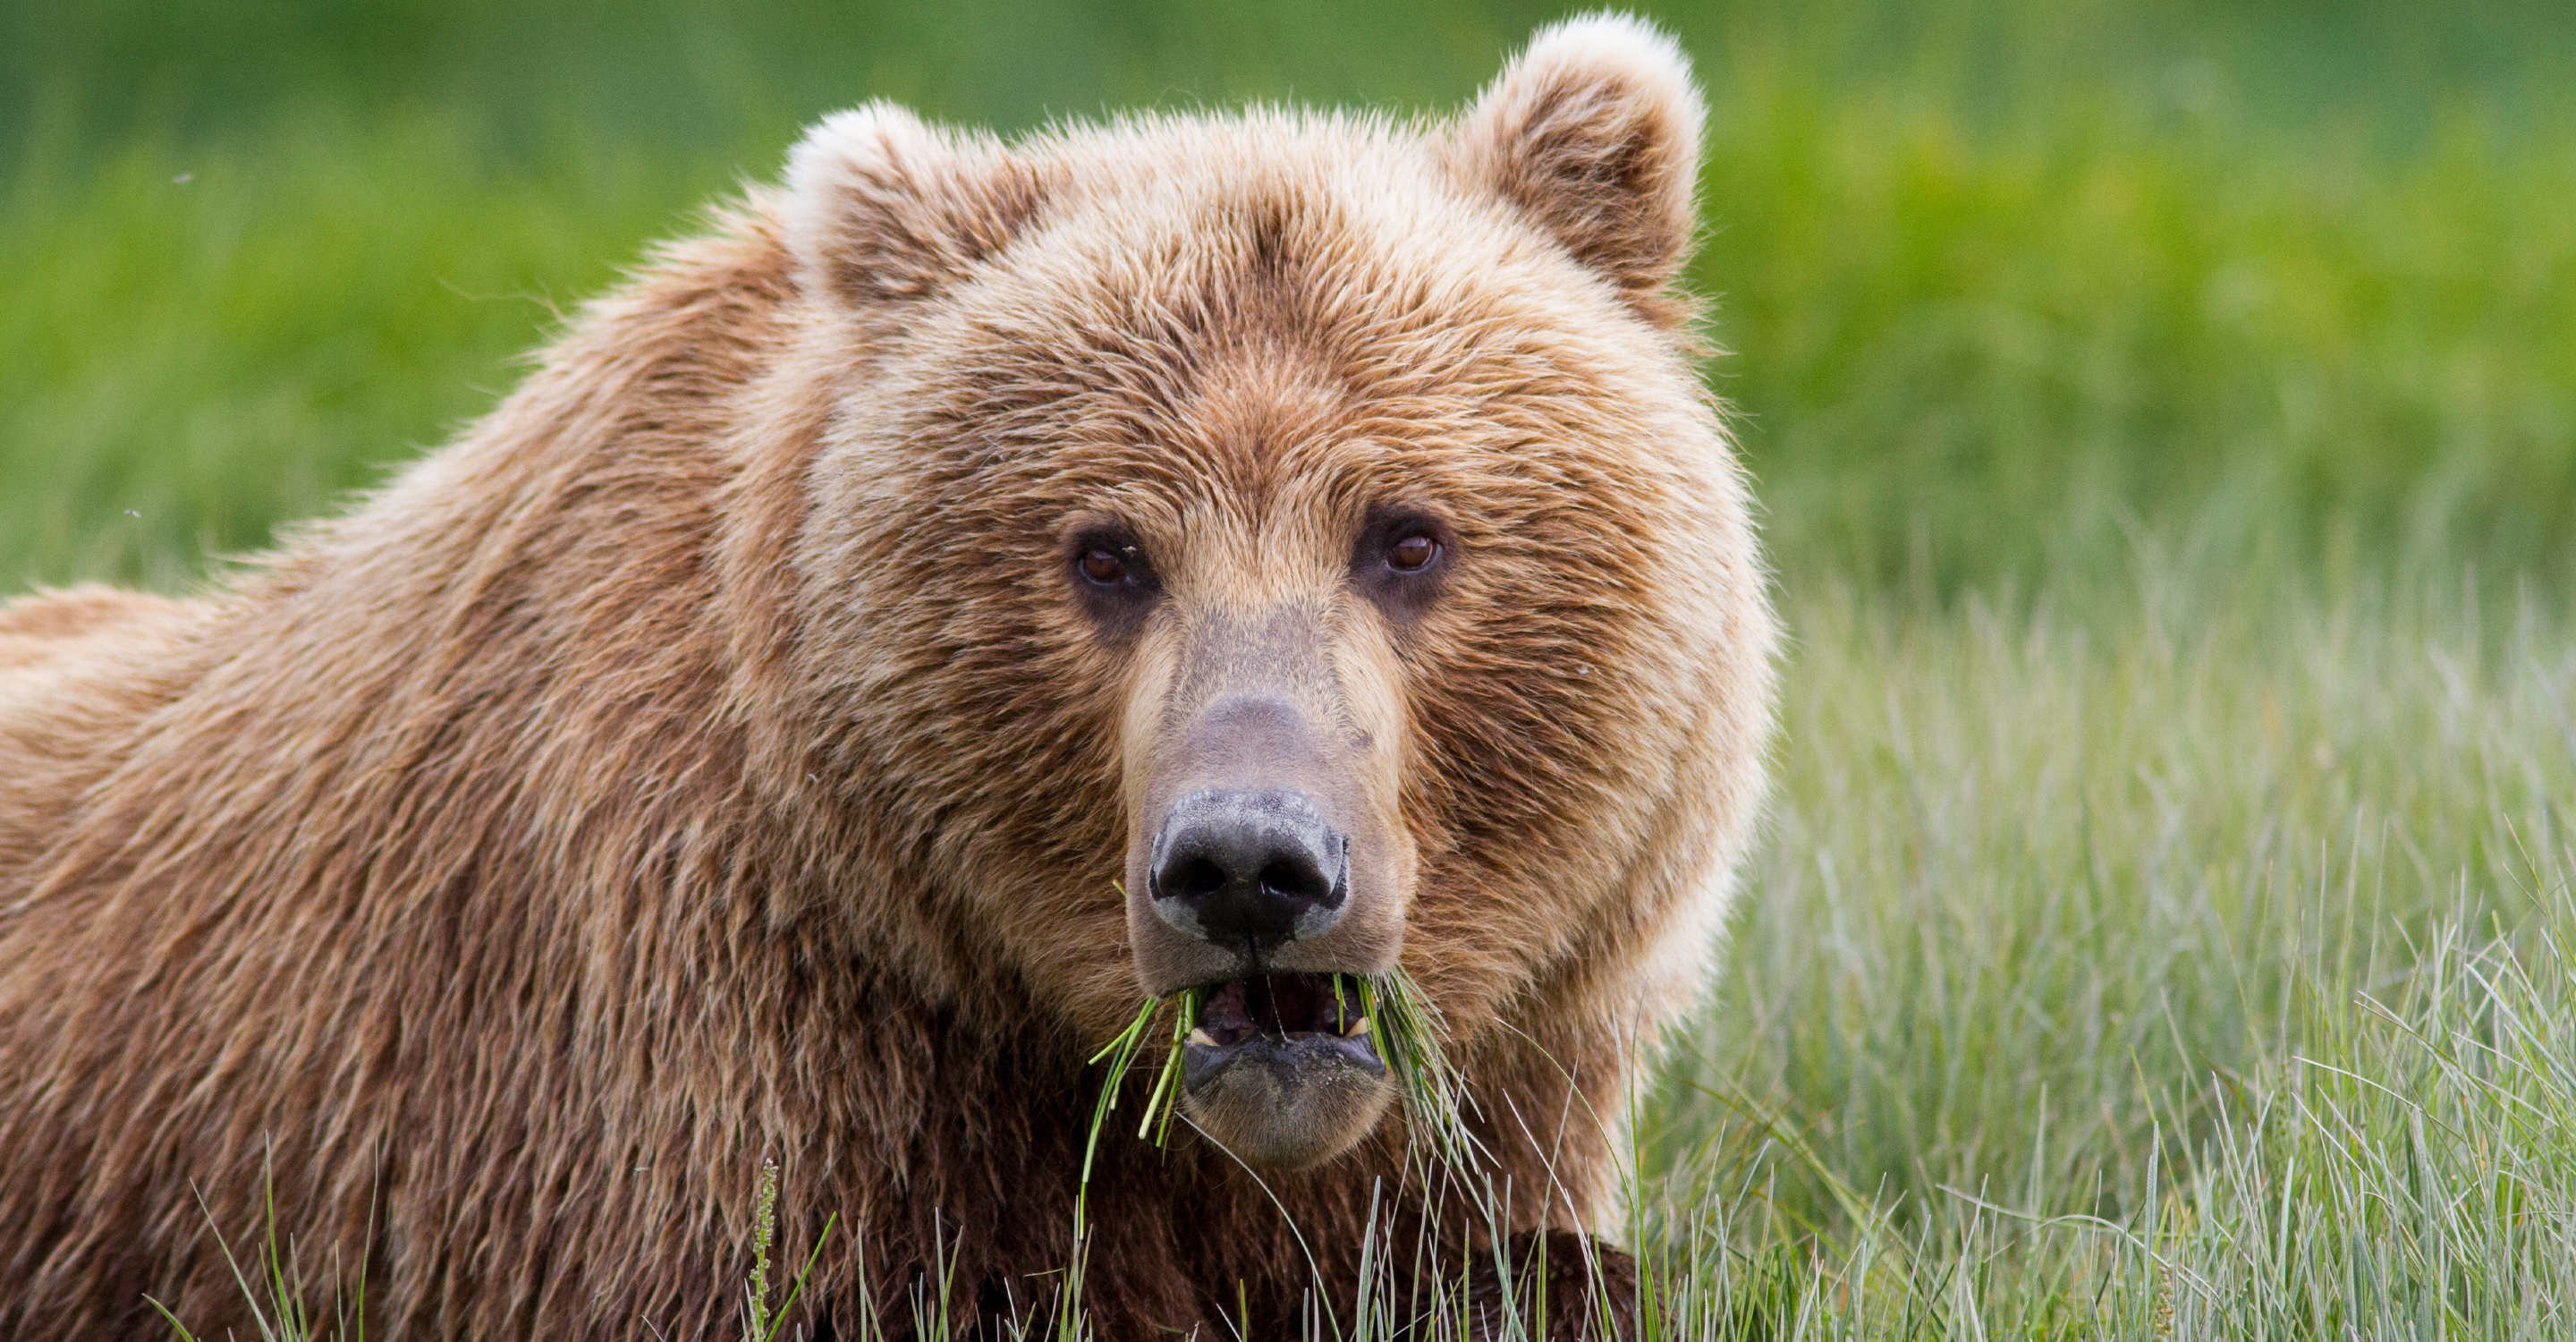 Alaska Grizzly Encounter: Kodiak to Katmai